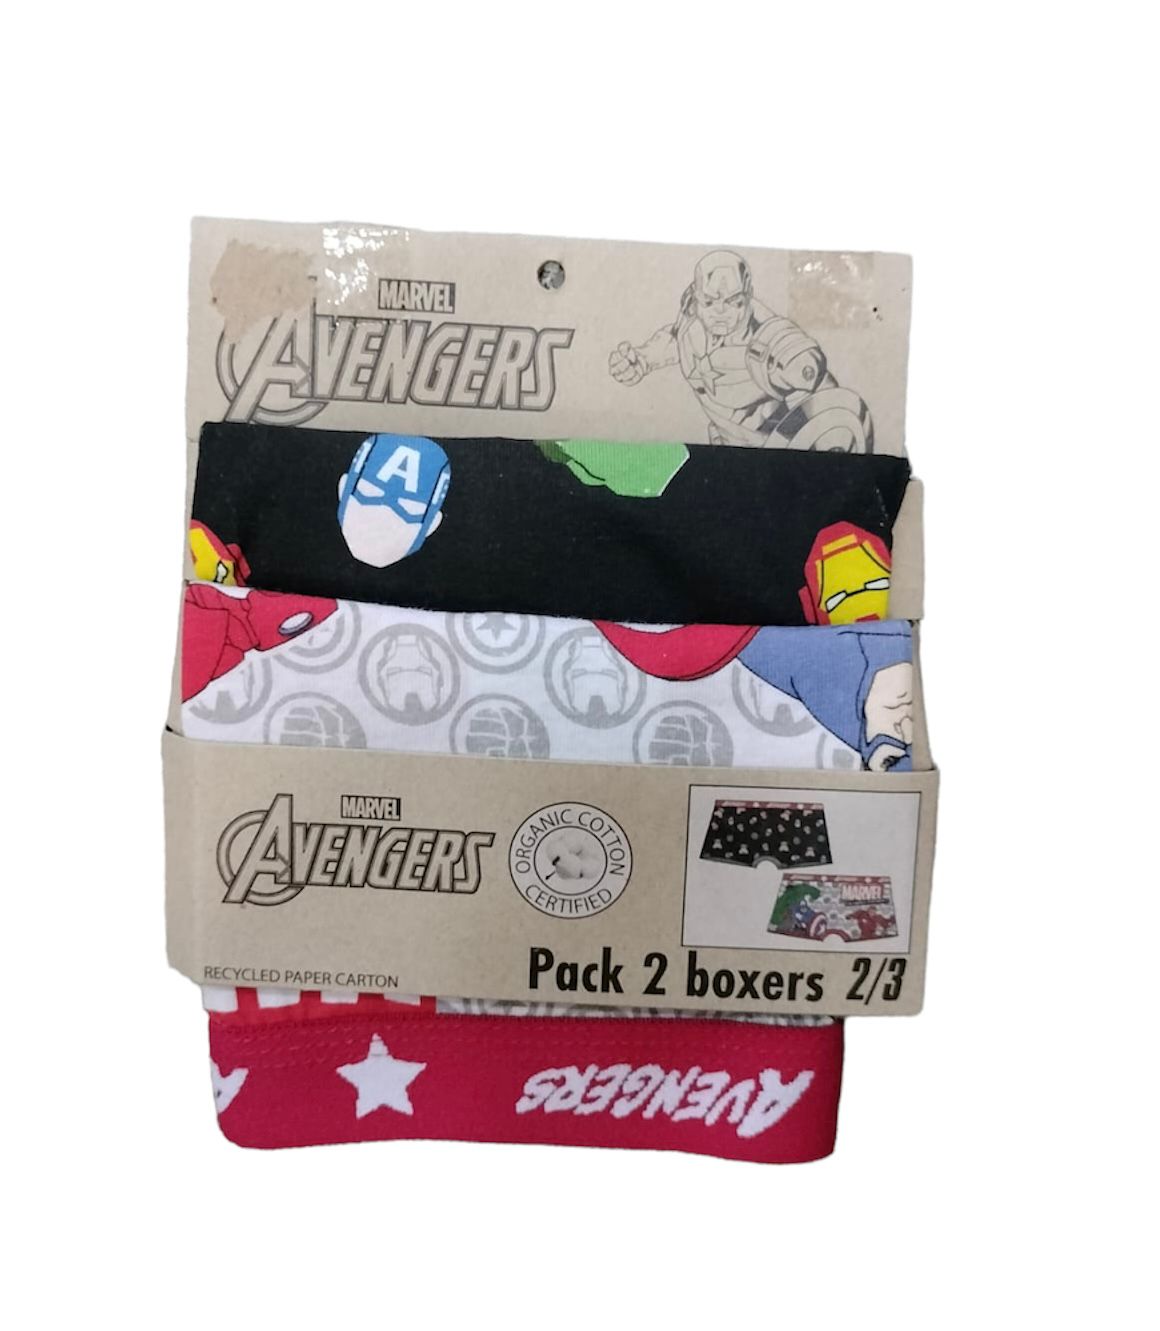 Pack Boxers Marvel Avengers